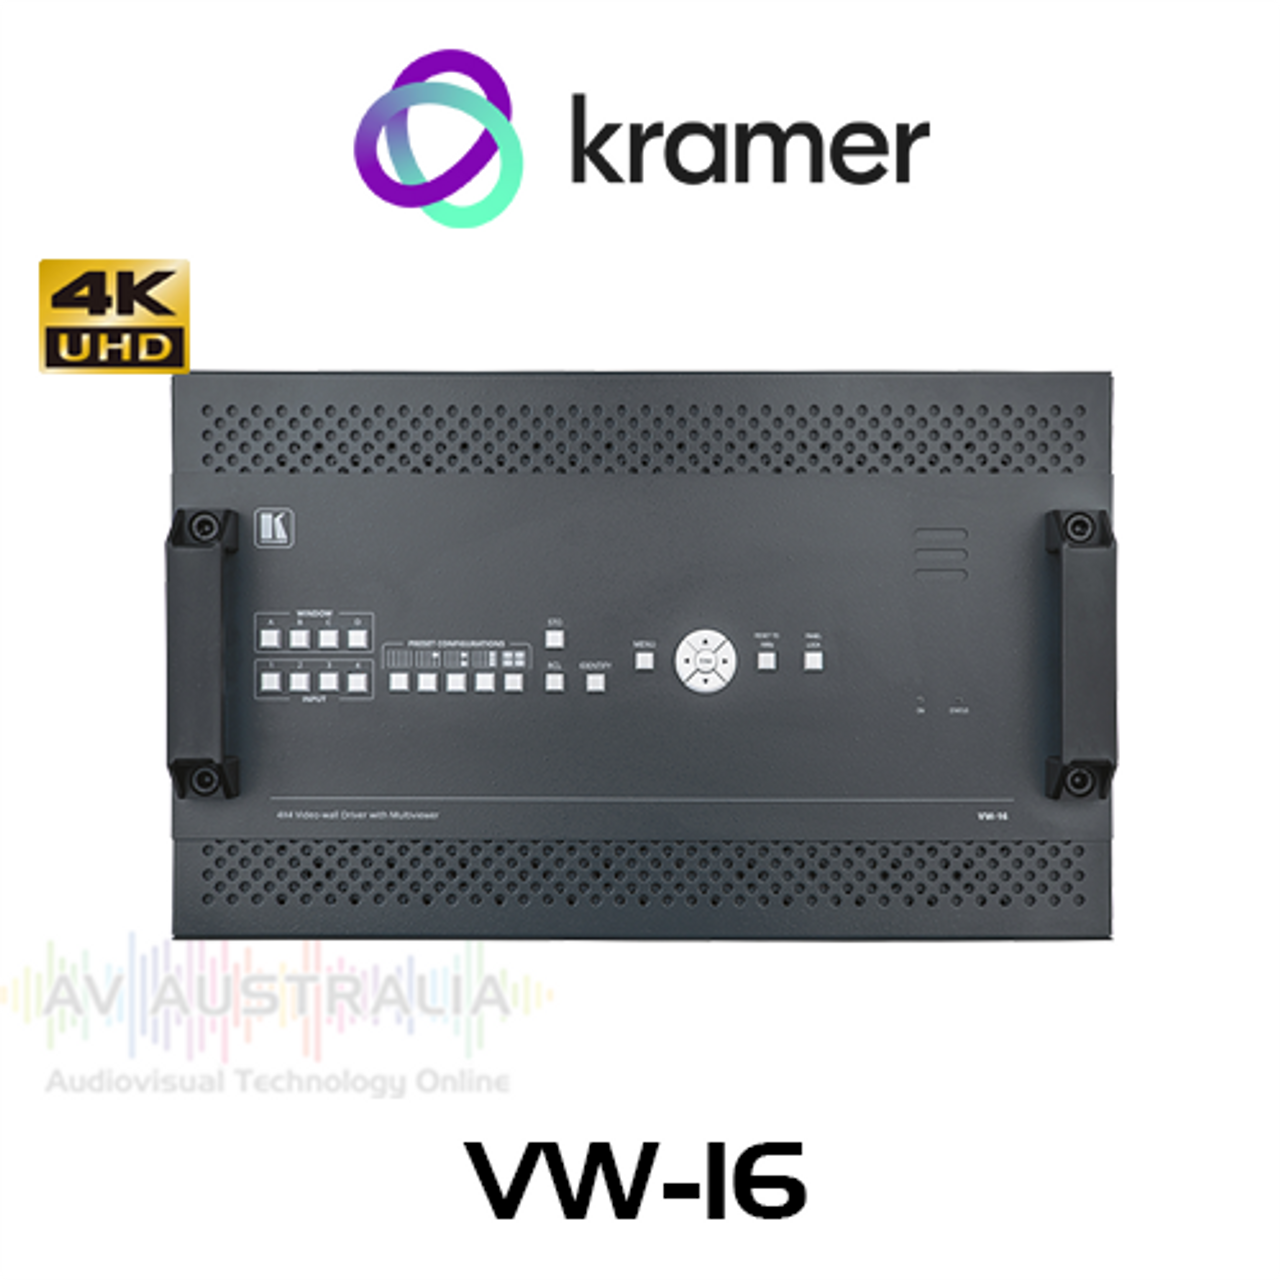 Kramer VW-16 4x4 4K60 HDMI 2.0 Multiview Video Wall Processor